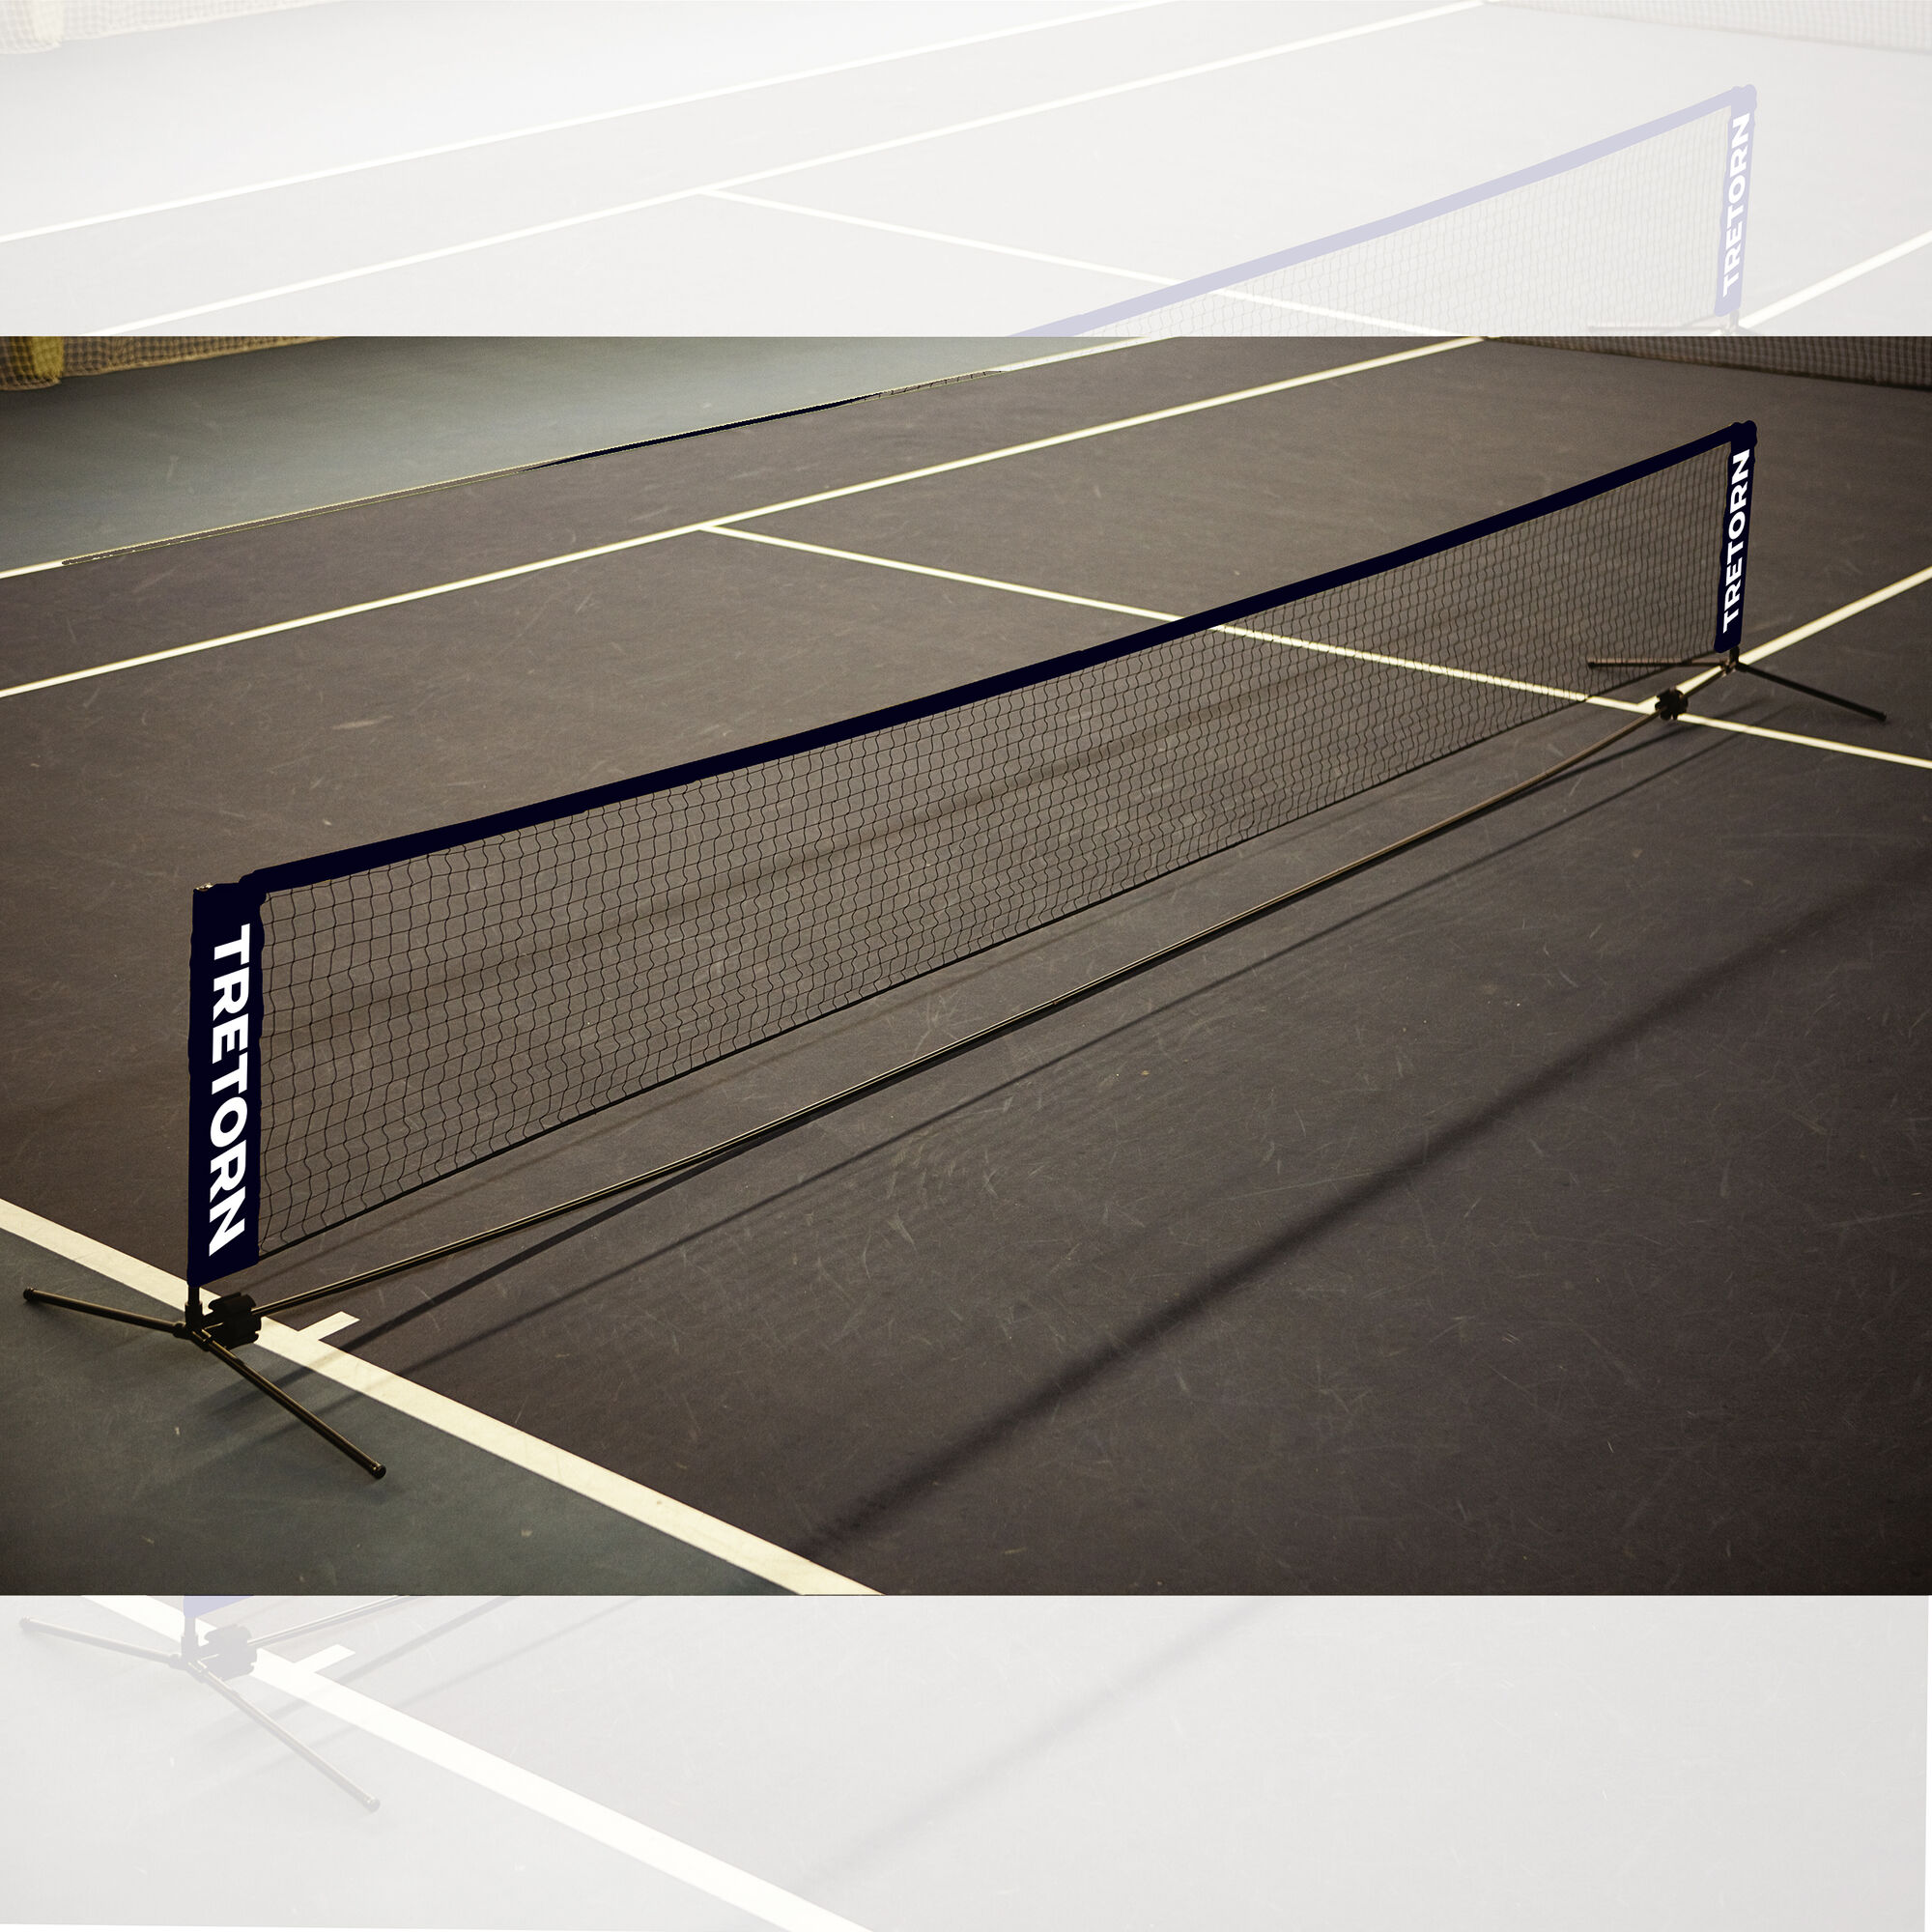 Купить сетку для тенниса. Теннисная стенка-сетка Tennis. Сетка для детского тенниса Mini Tennis net 6.1m. Wrz259700 теннисные аксессуары Tennis net 6.10m. Сетка мини теннис 7/6 Tennis net.